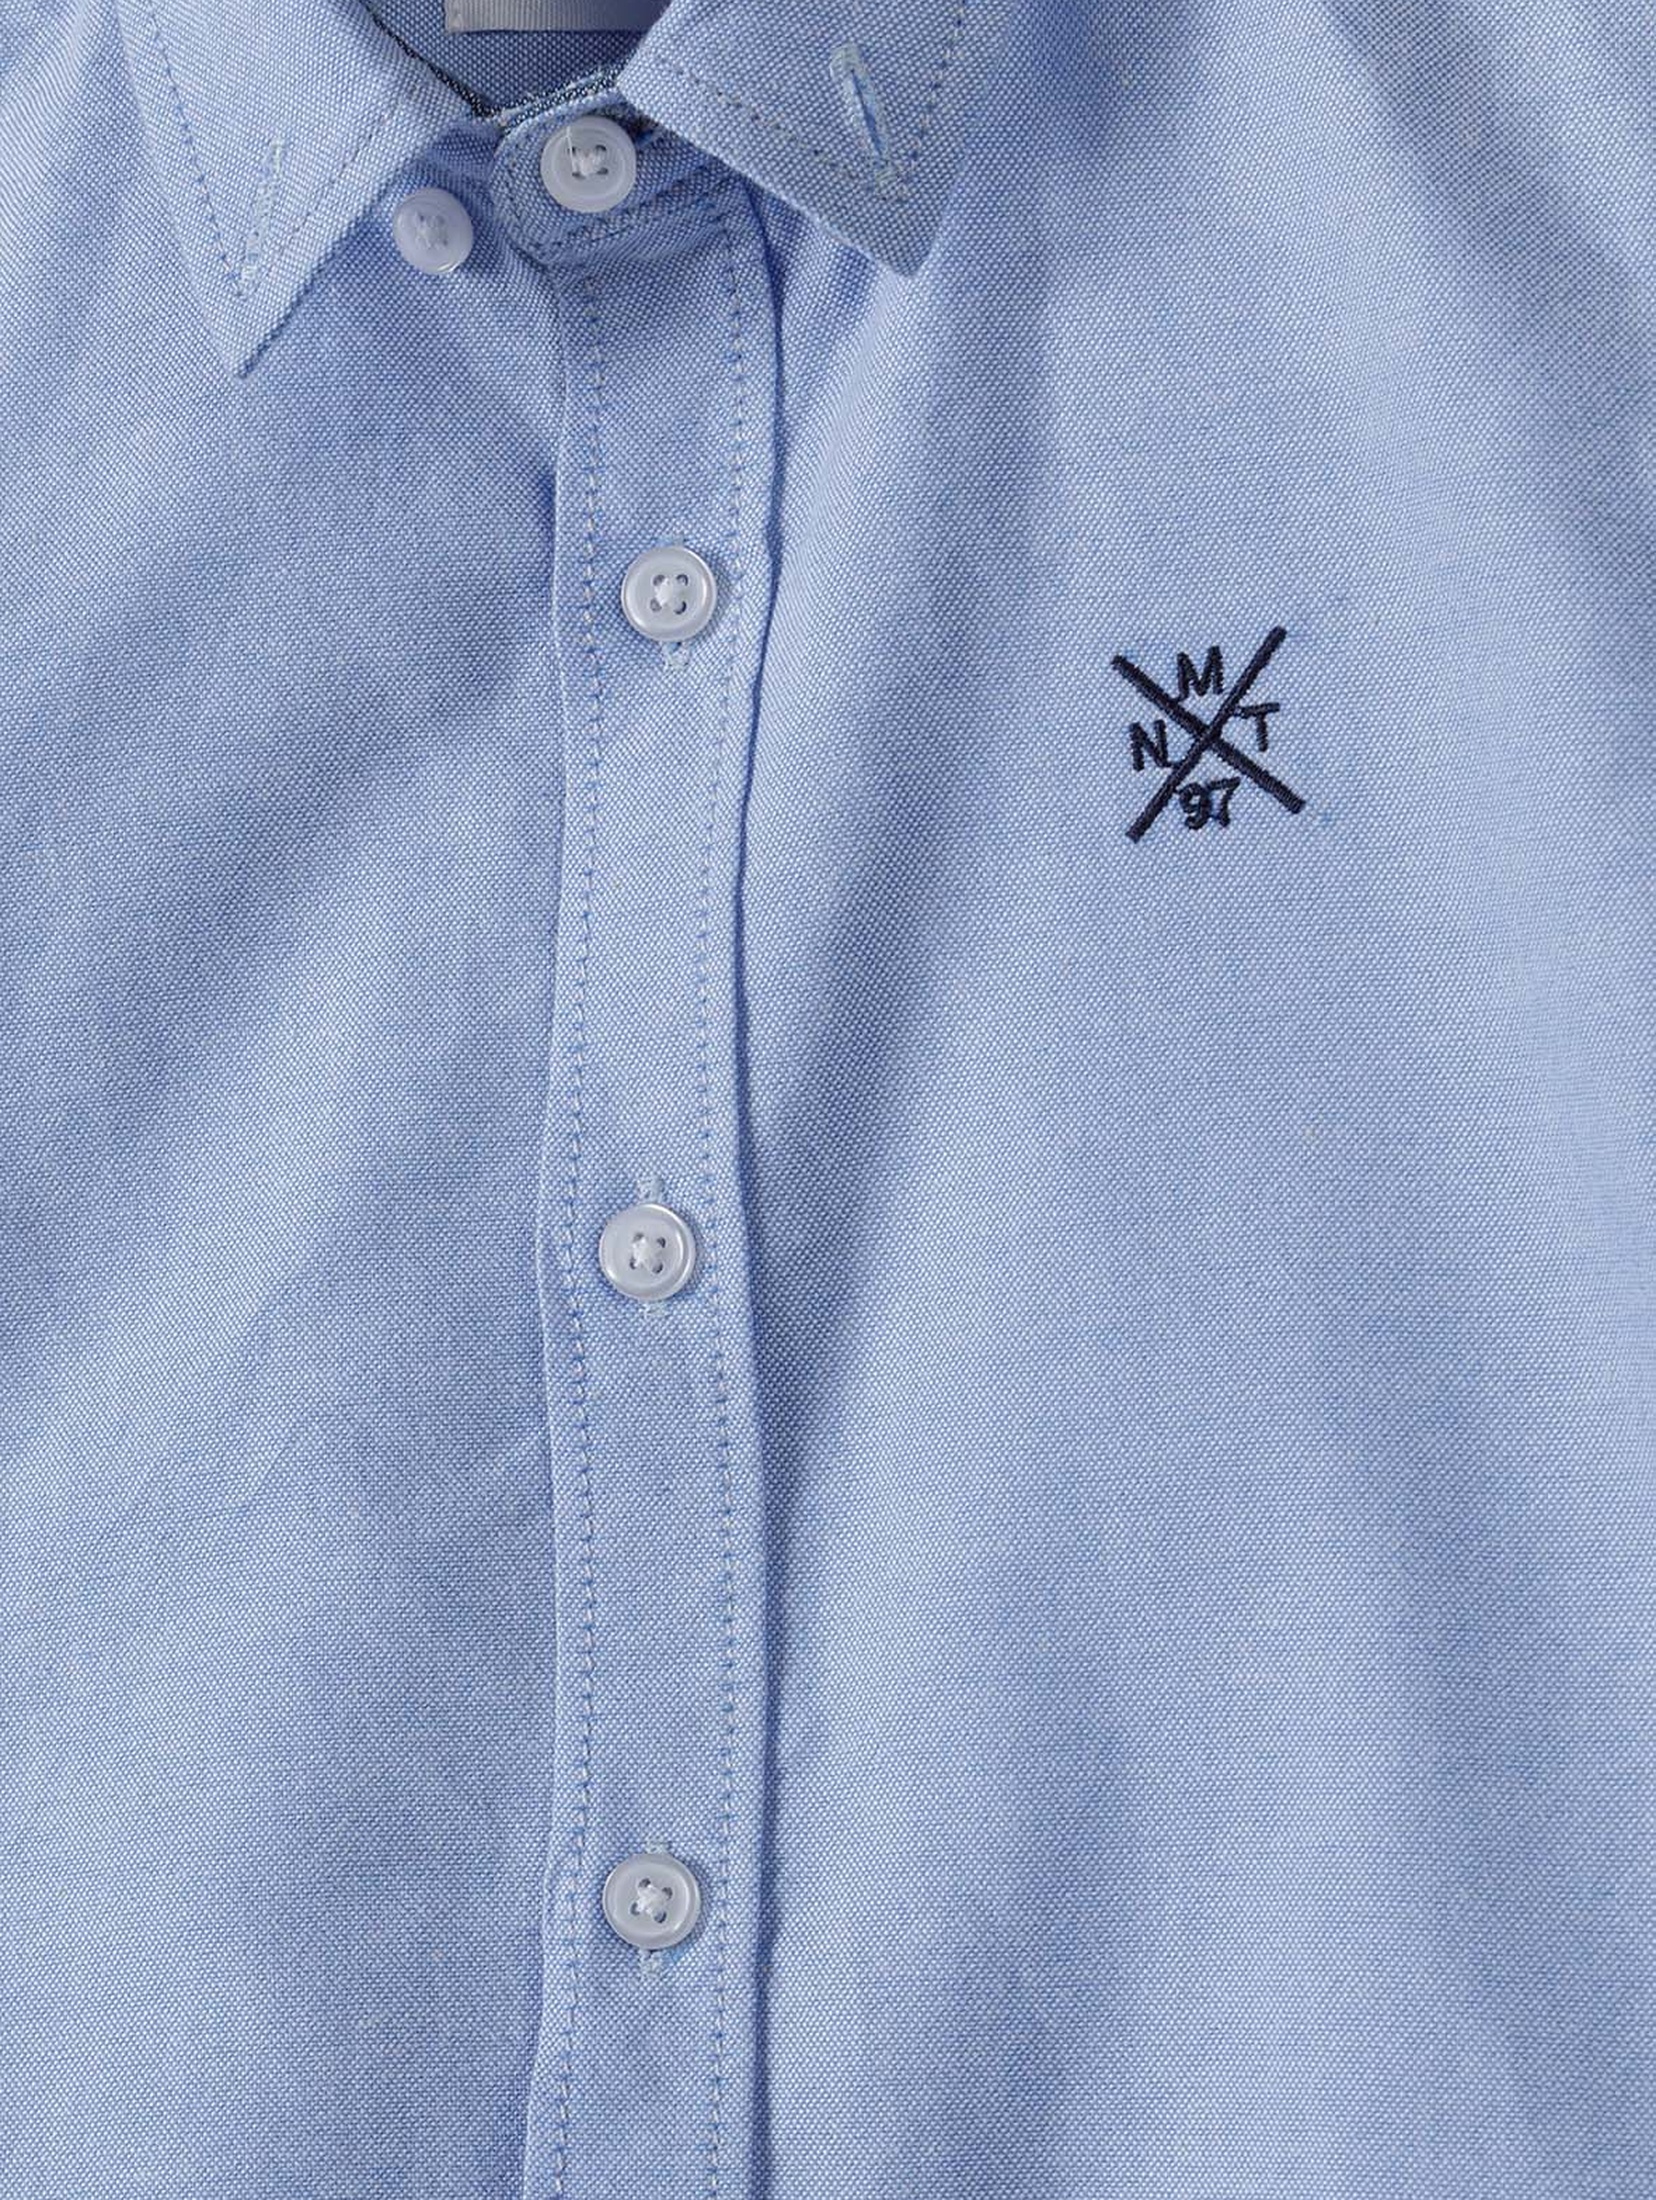 Niebieska koszula z krótkim rękawem z tkaniny oksford dla chłopca